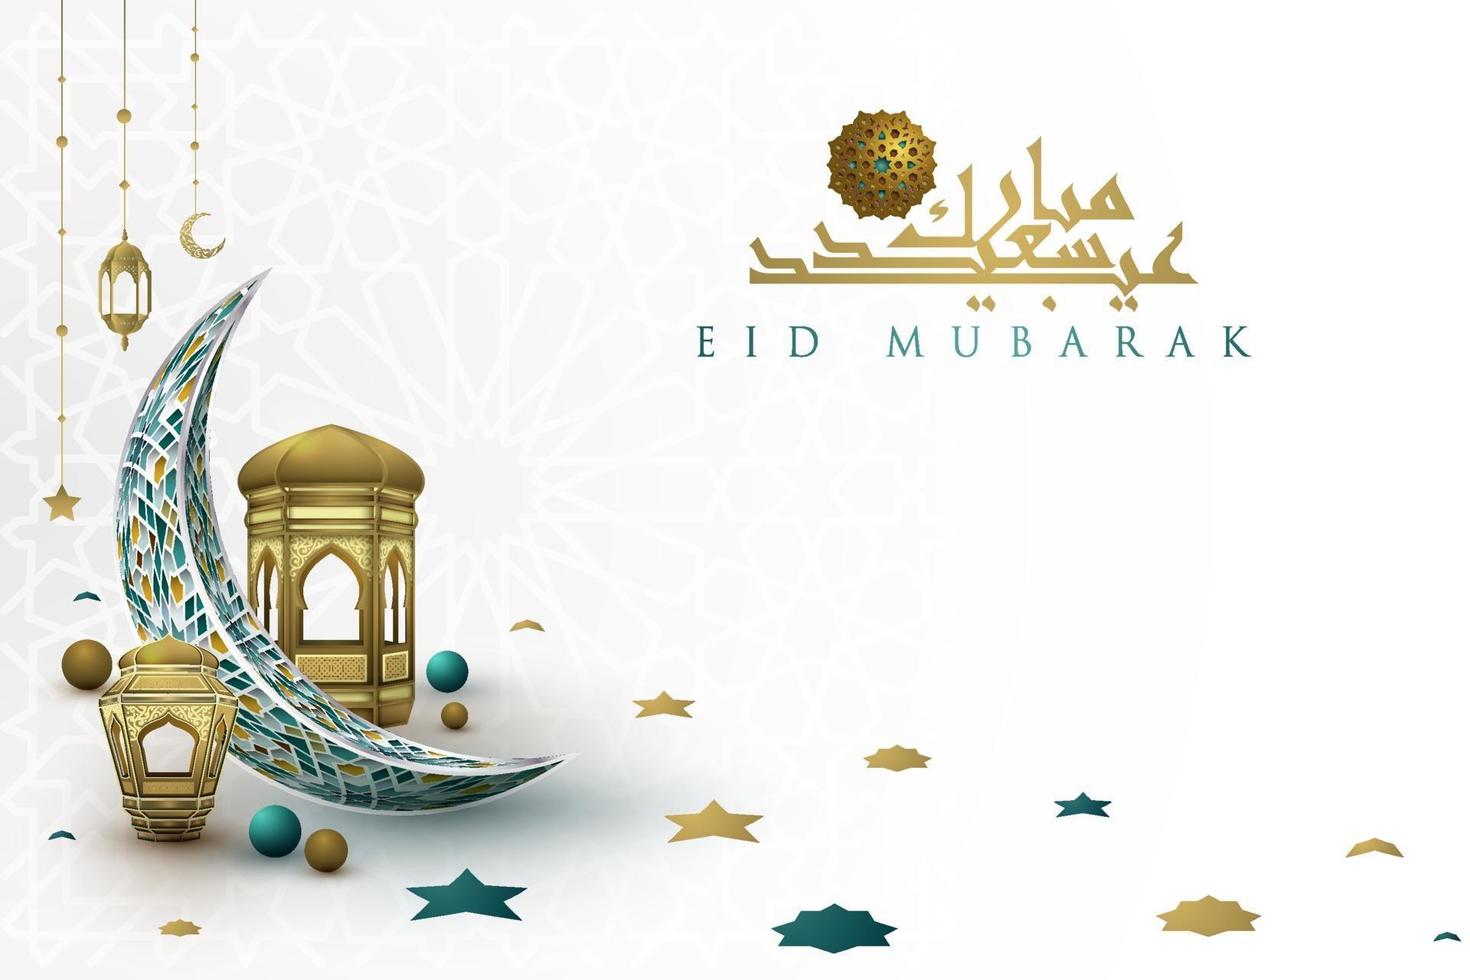 eid mubarak saluto disegno vettoriale illustrazione islamica con bella lanterna, luna e calligrafia araba